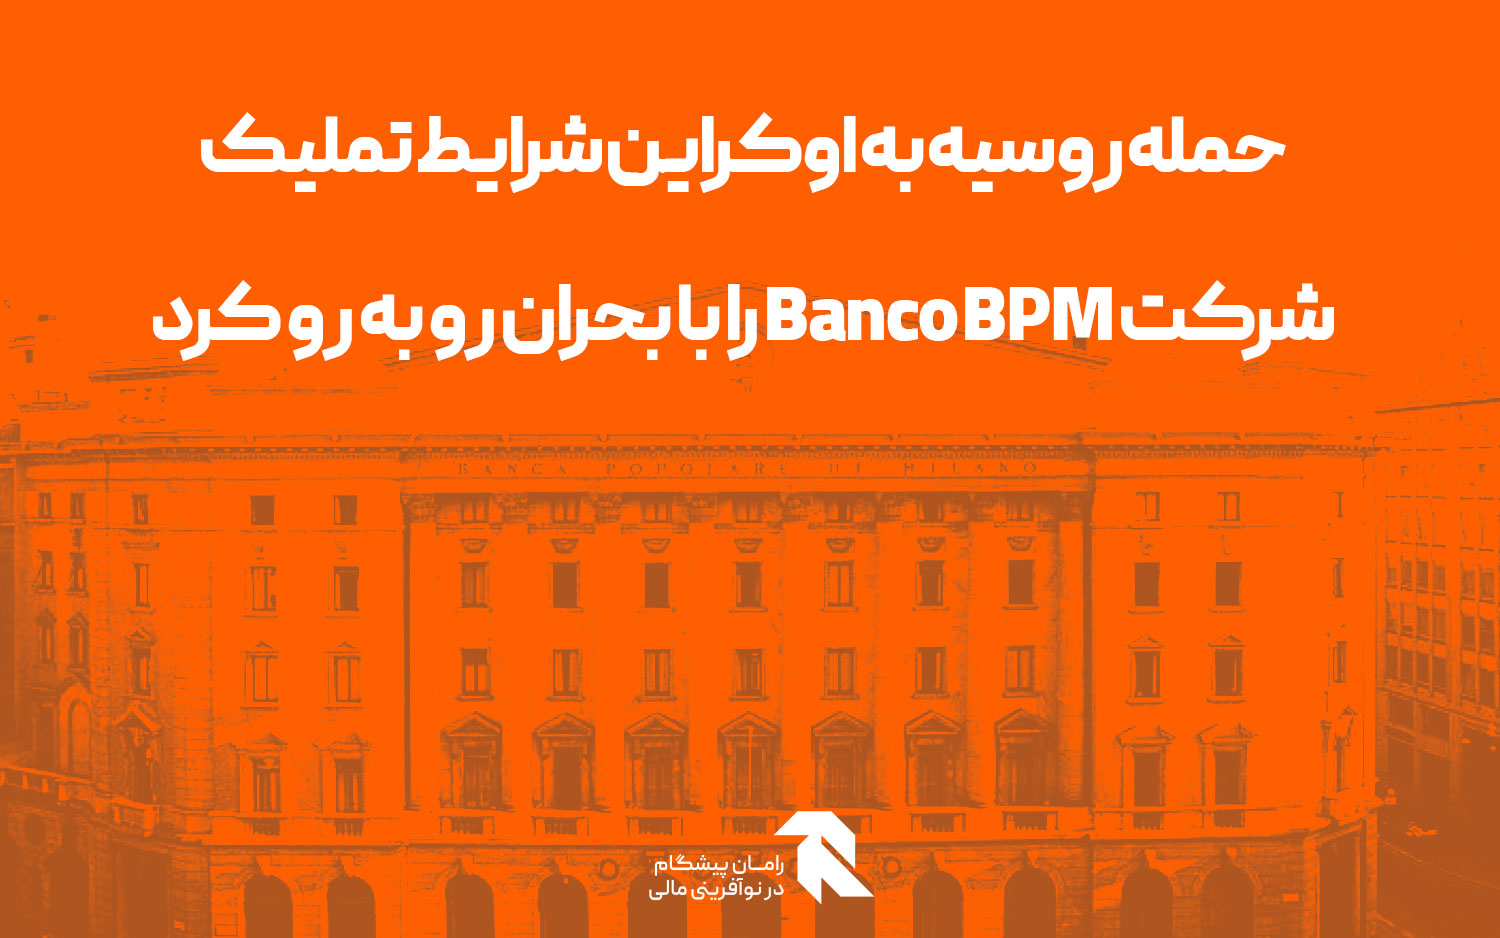 حمله روسیه به اوکراین شرایط تملیک شرکت Banco BPM را با بحران رو به رو کرد